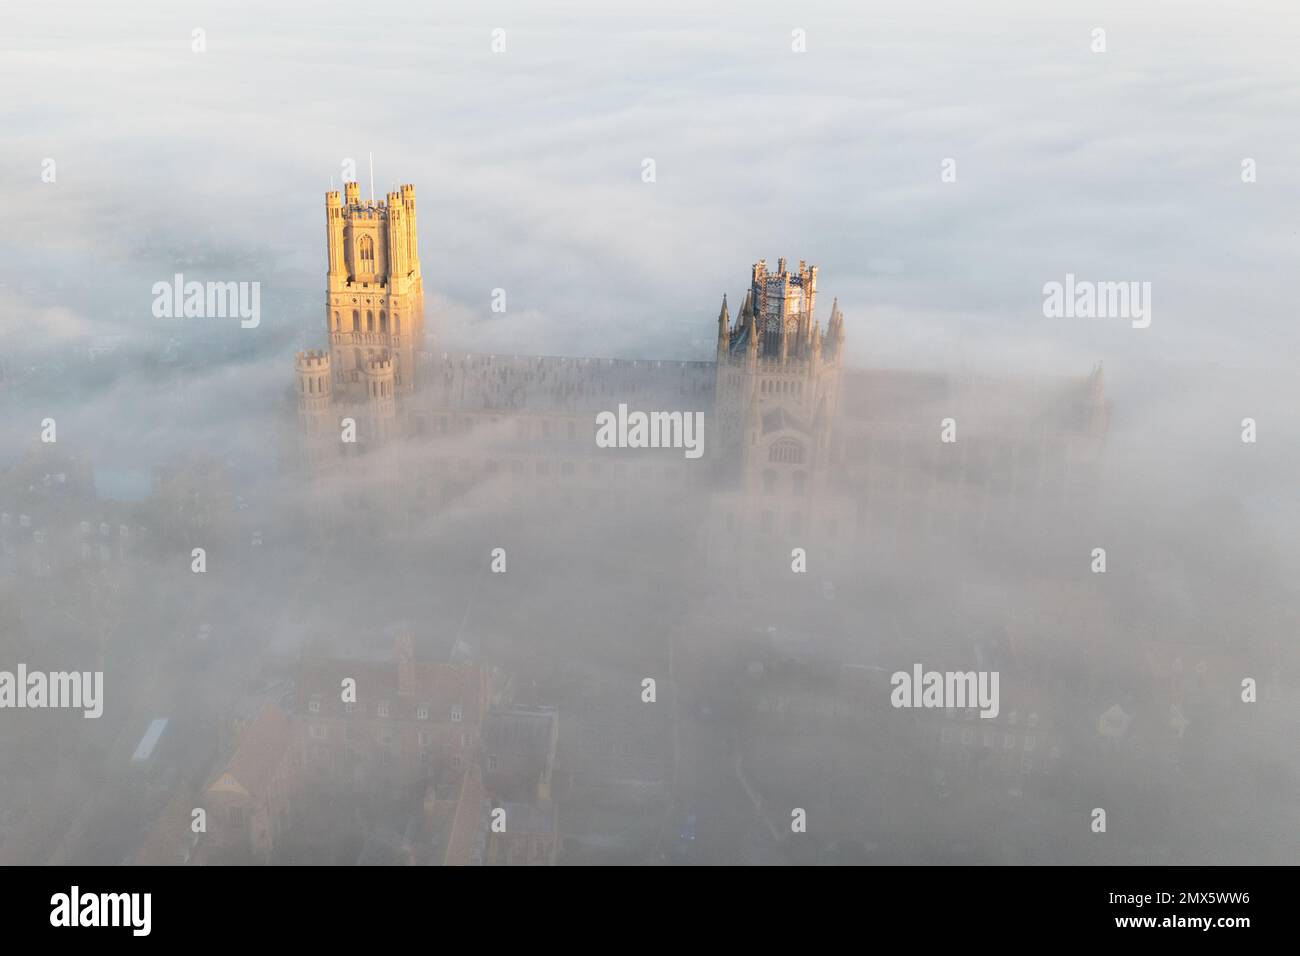 La foto datata gennaio 24th mostra la Cattedrale Ely a Cambridgeshire, conosciuta come la nave delle Fene, avvolta nella nebbia il martedì mattina. Majestic Ely Cat Foto Stock